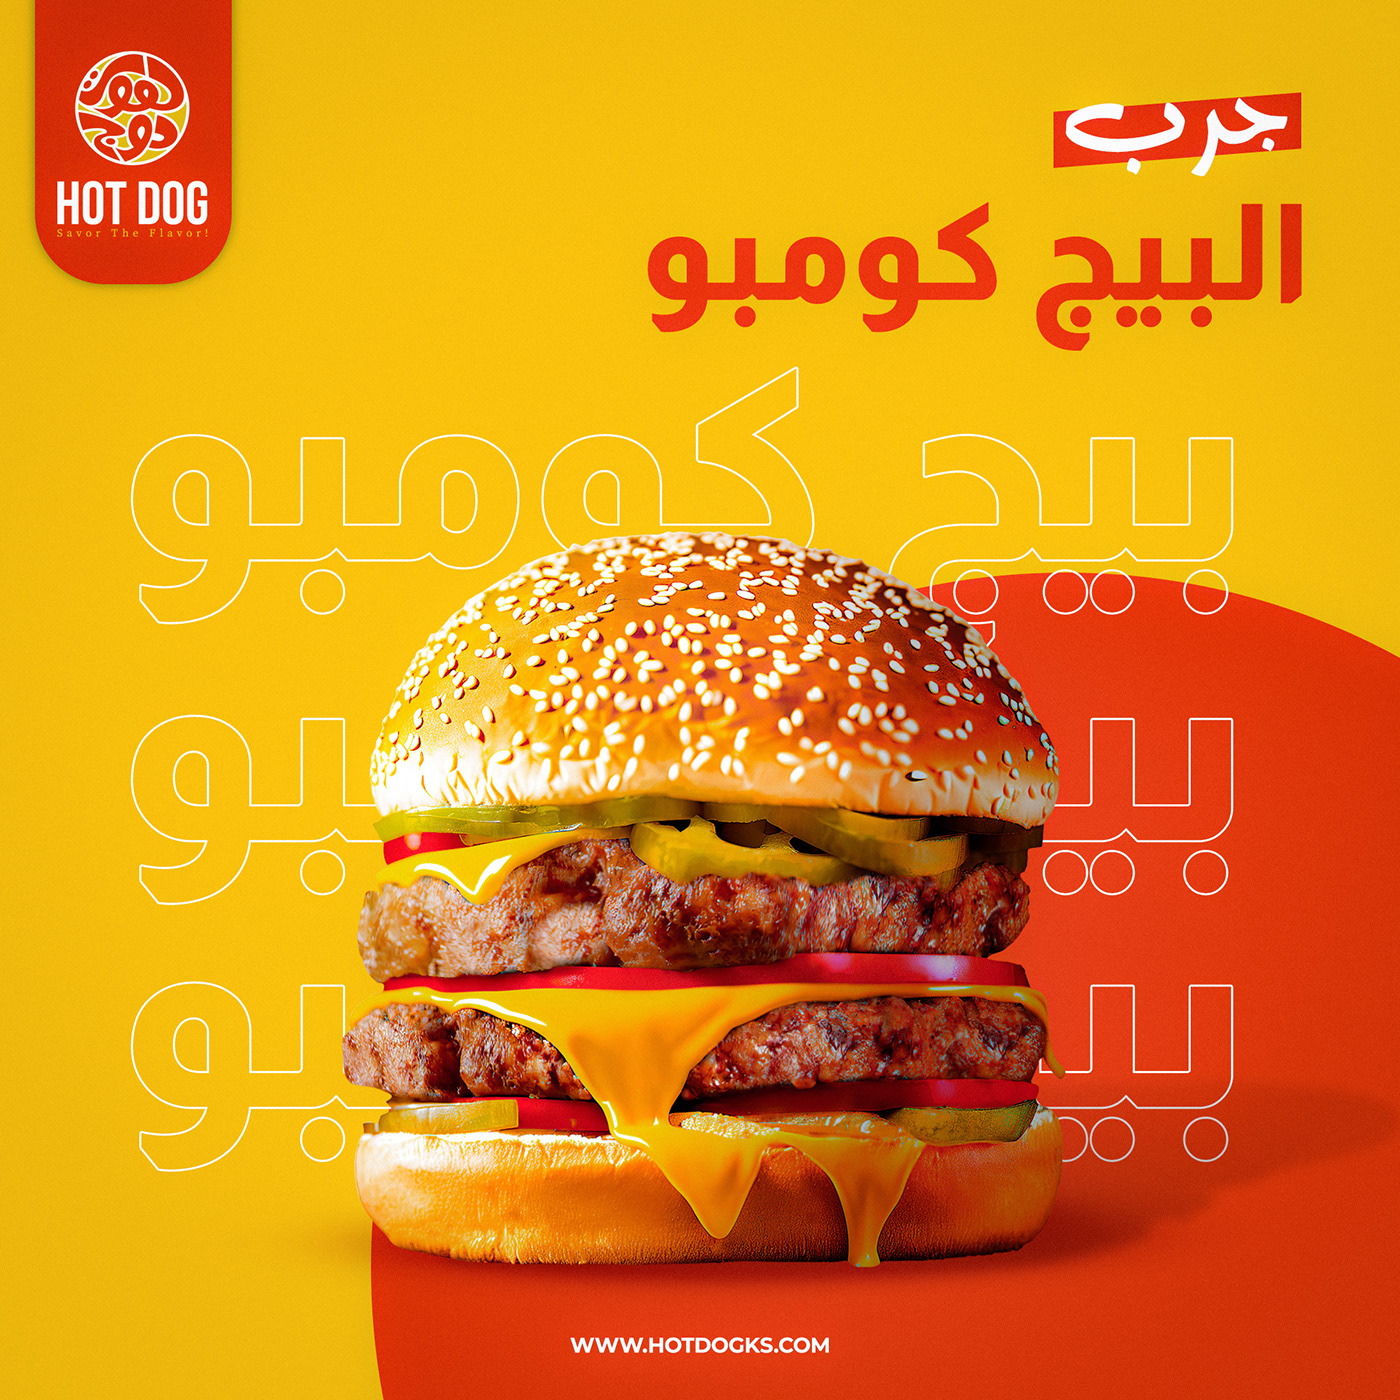 ads Advertising  Social media post fooddesign Fast food burger Food  restaurant Social Media Design media post